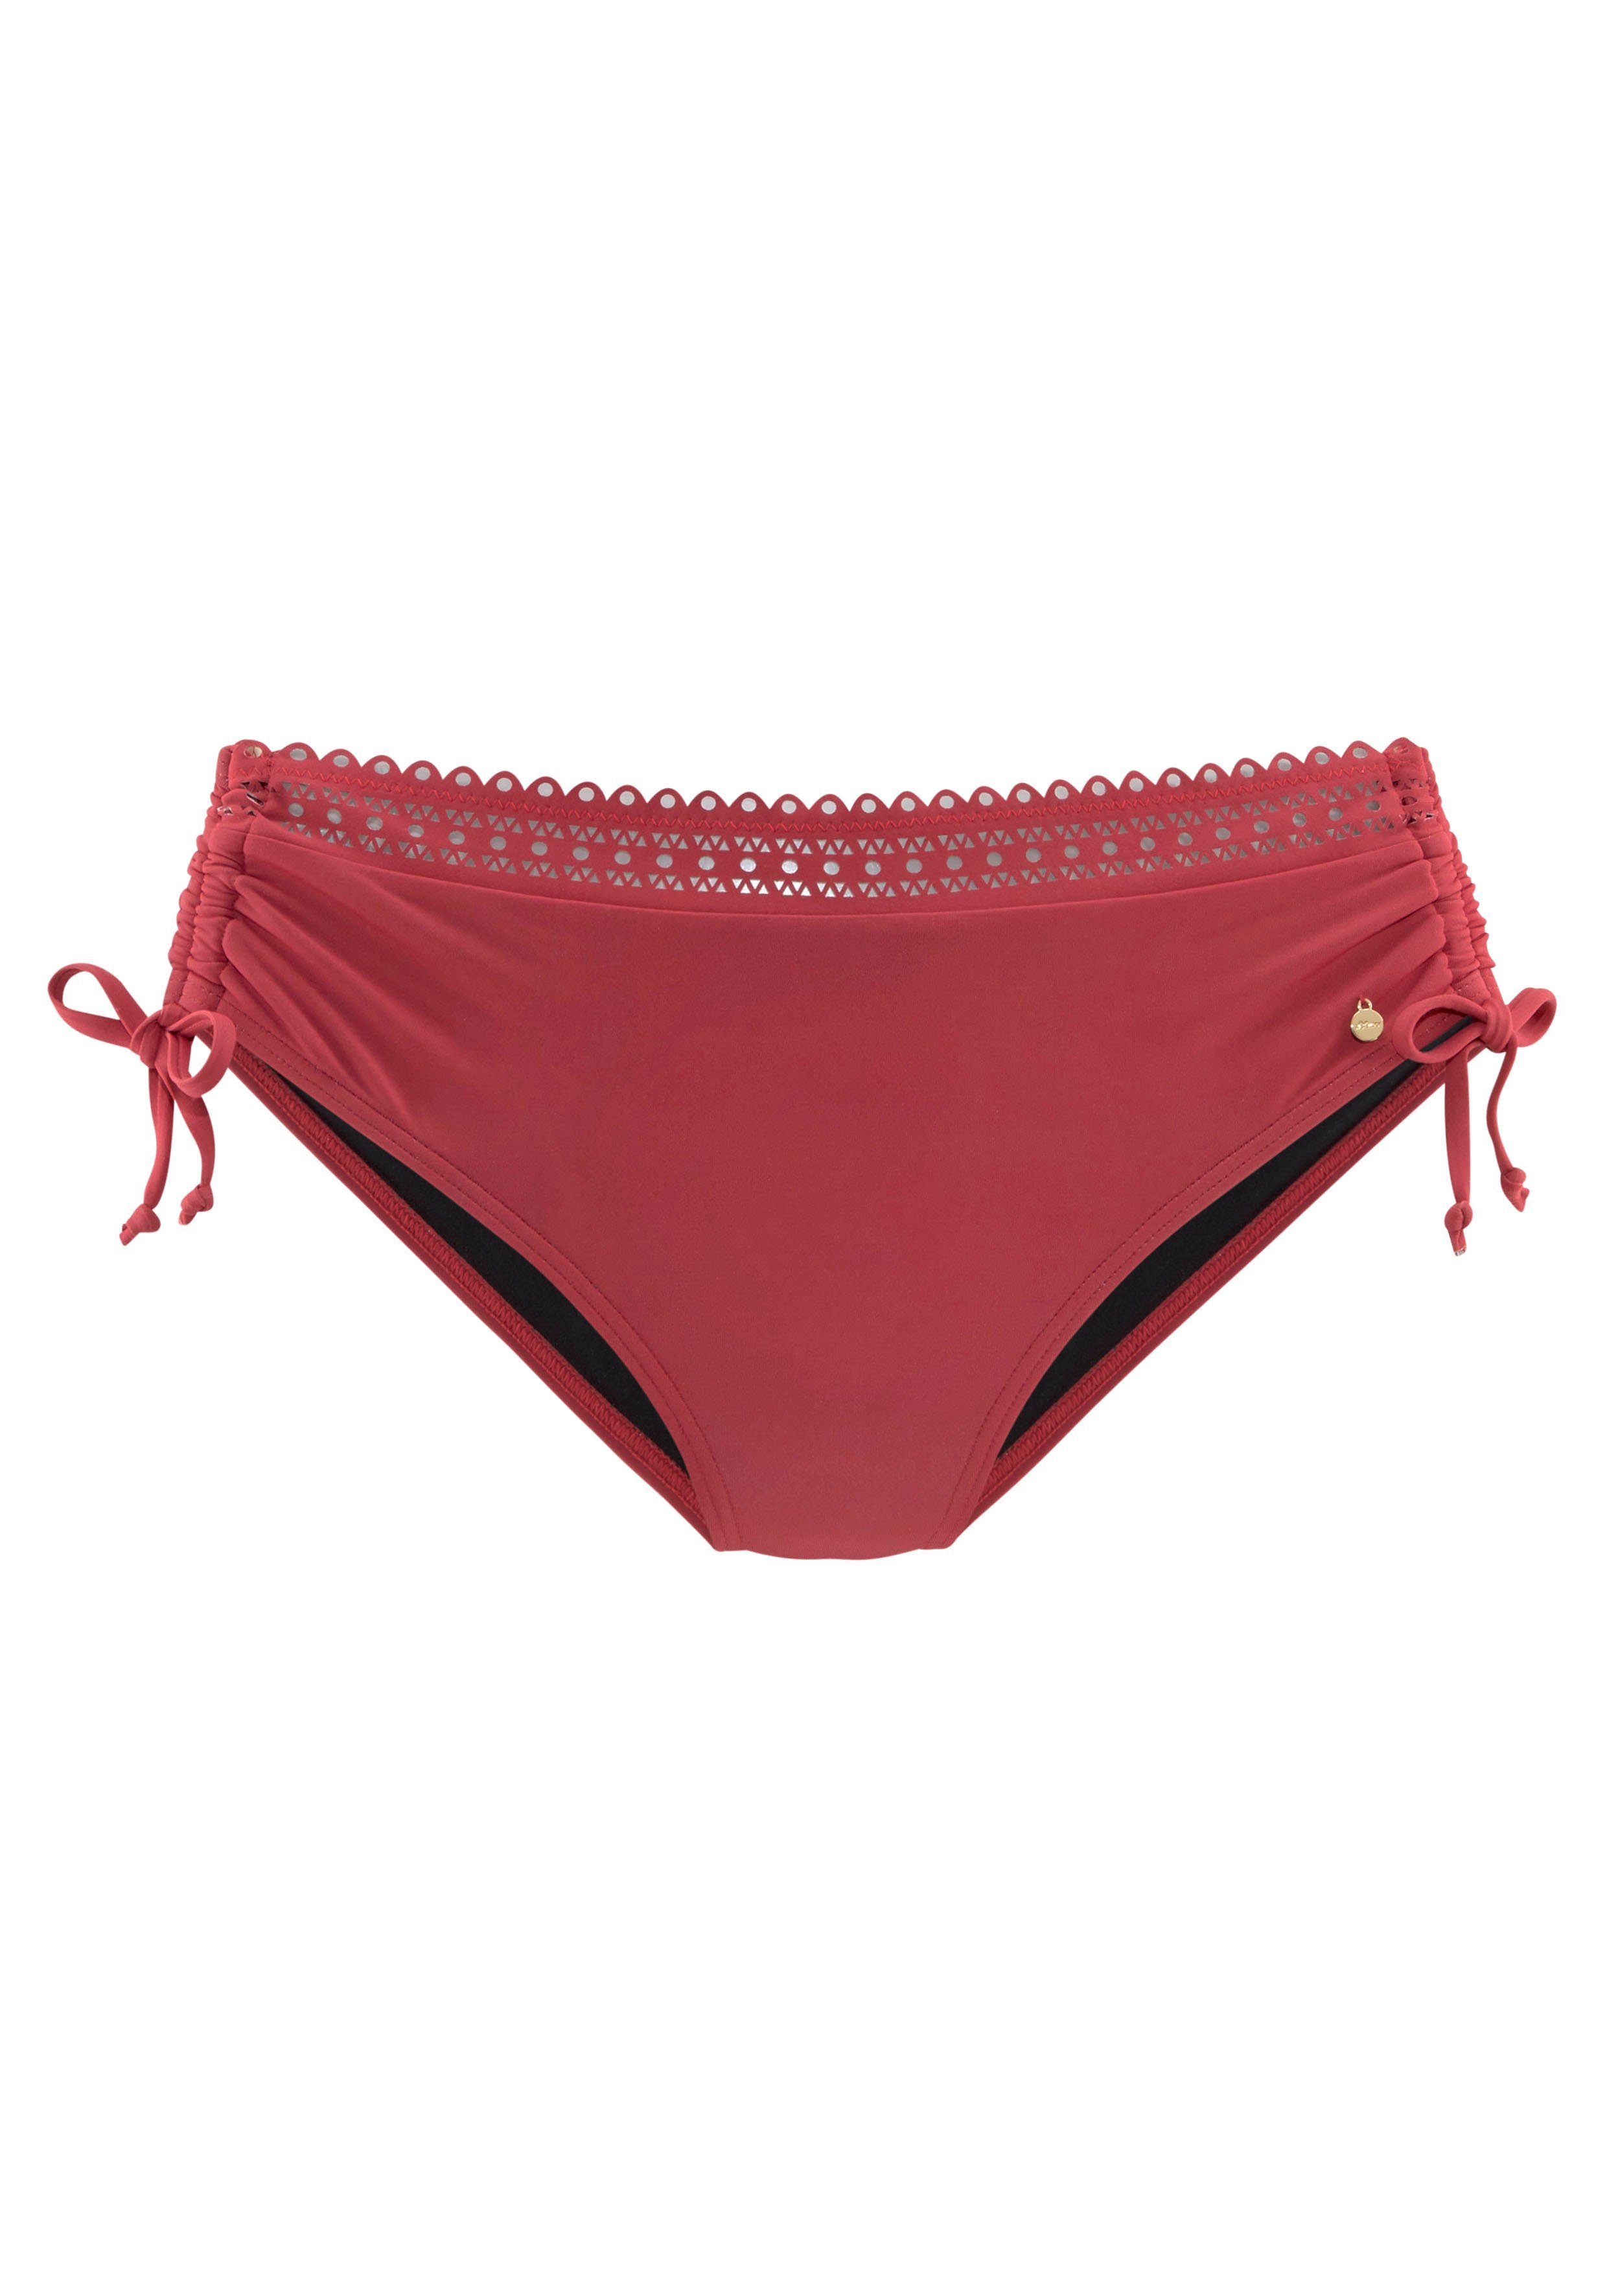 s.oliver red label beachwear bikinibroekje aiko met gehaakte look rood